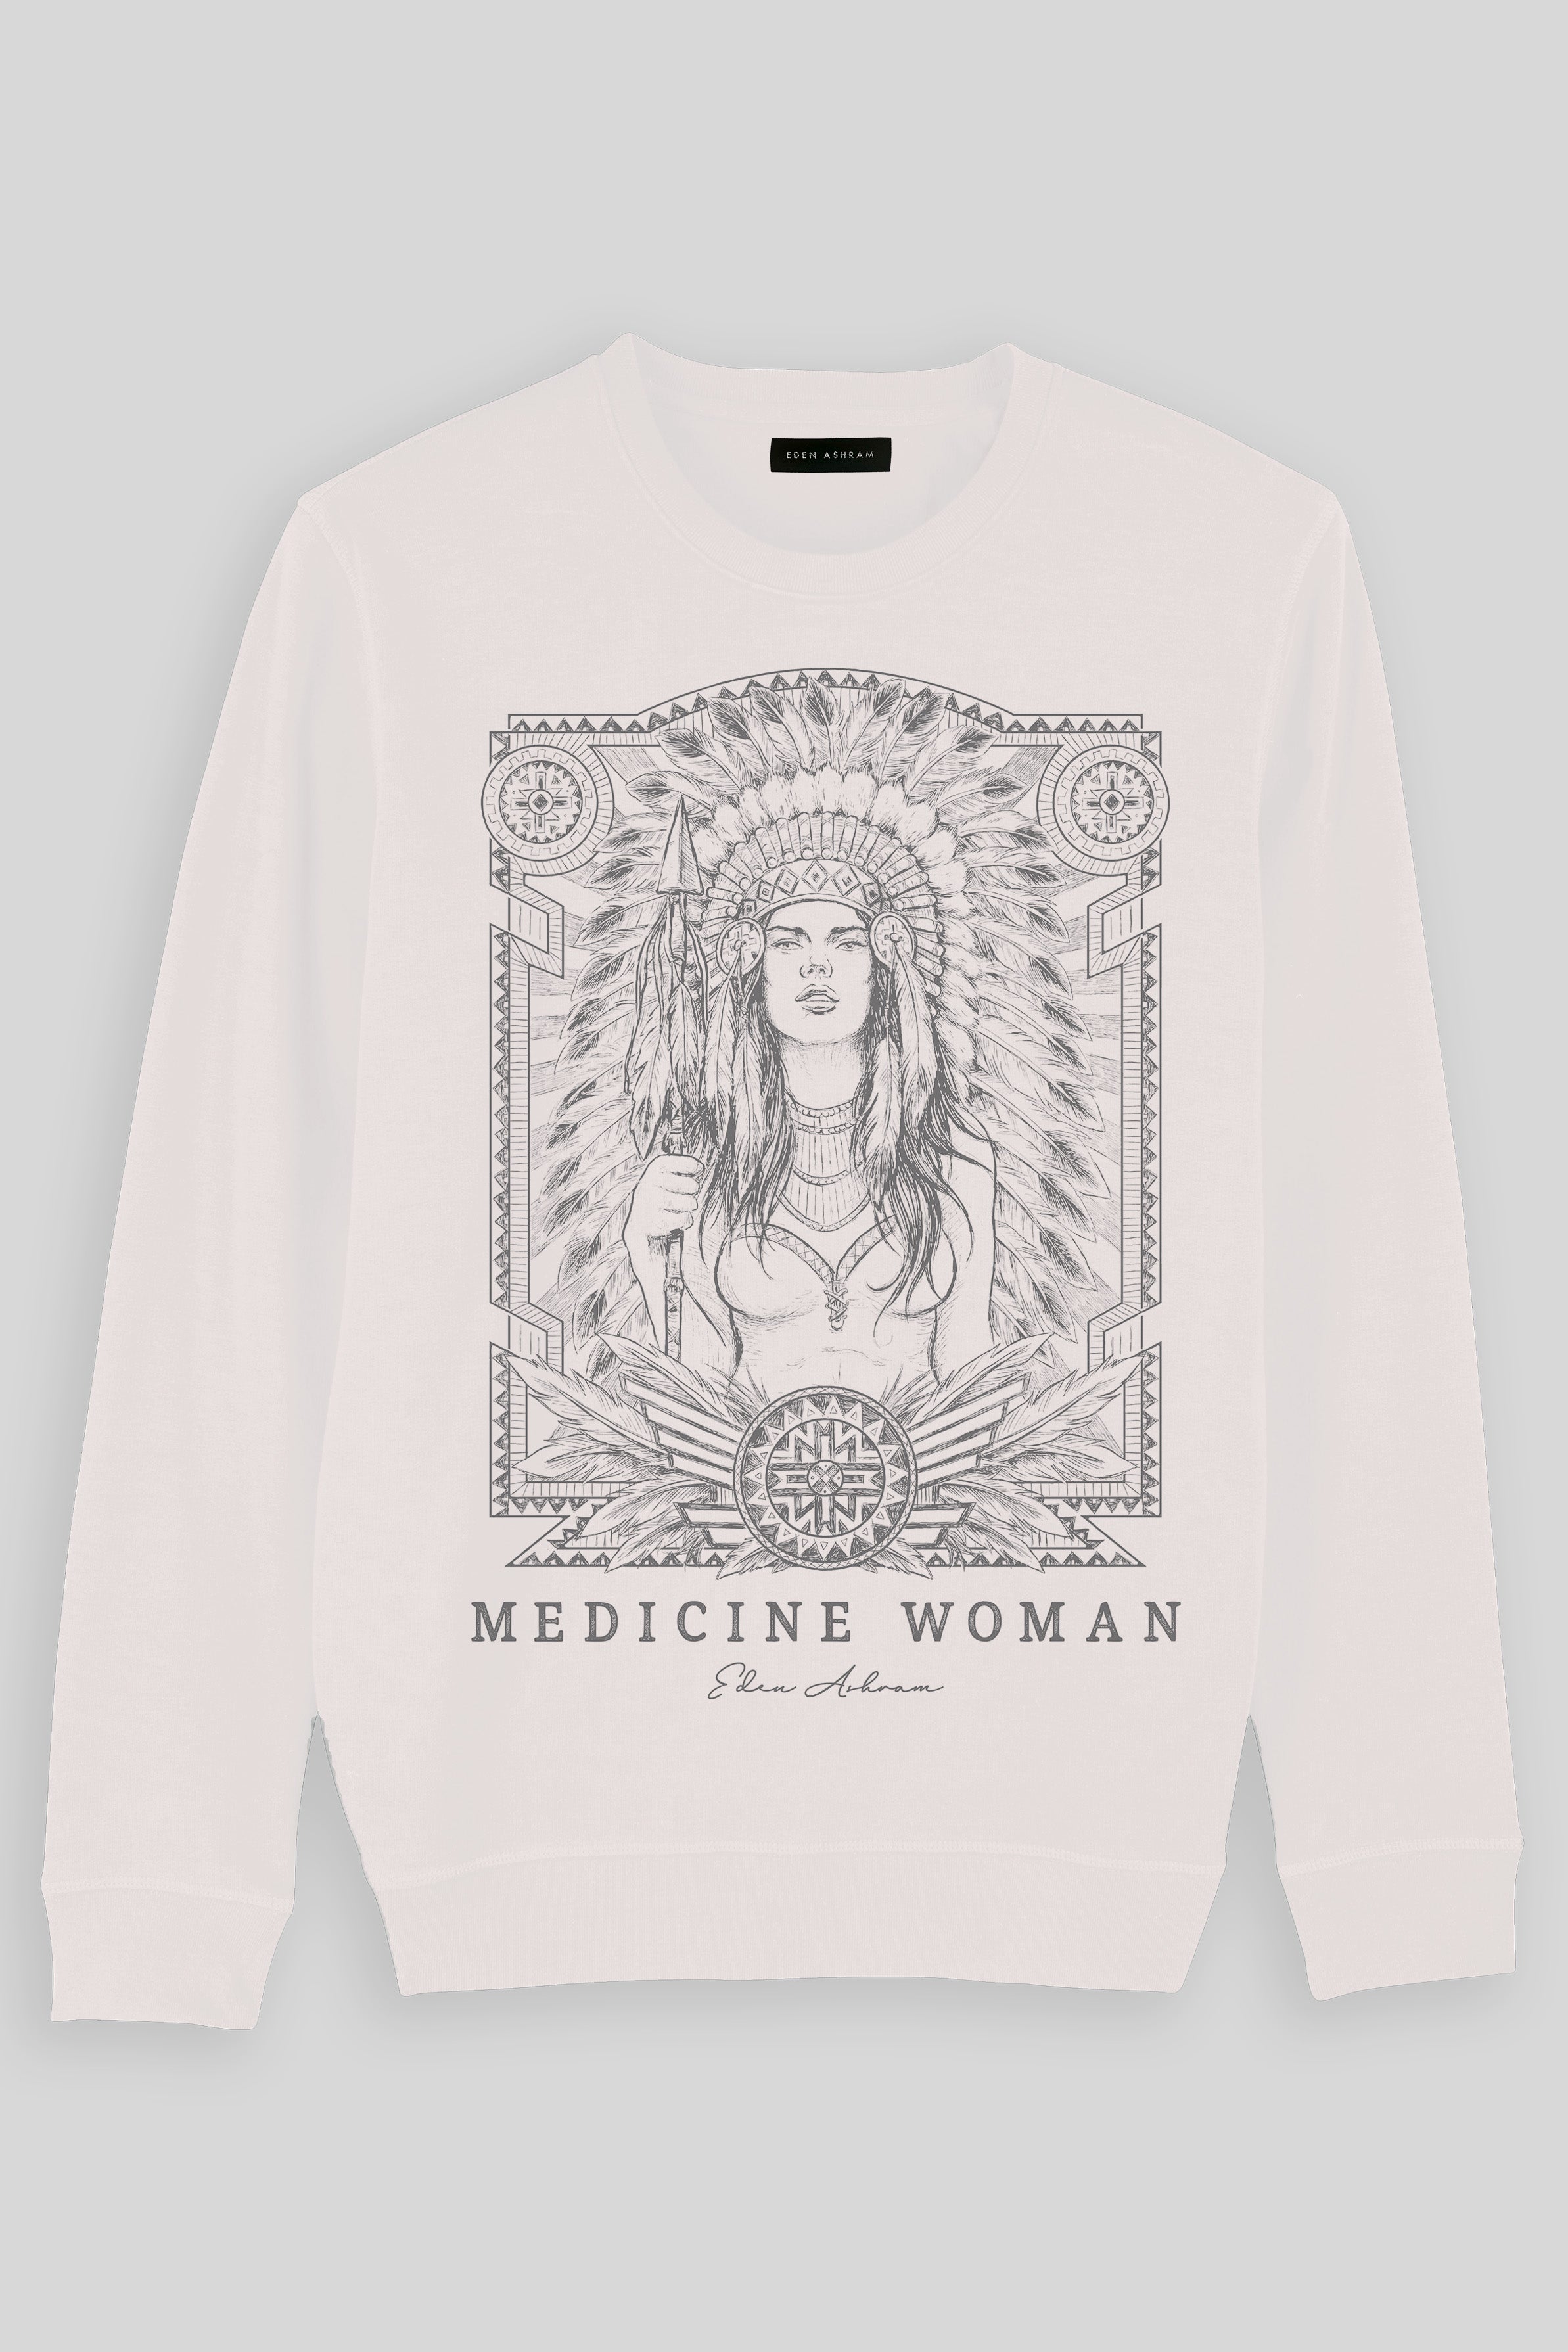 EDEN ASHRAM Medicine Woman Premium Crew Neck Sweatshirt Vintage White